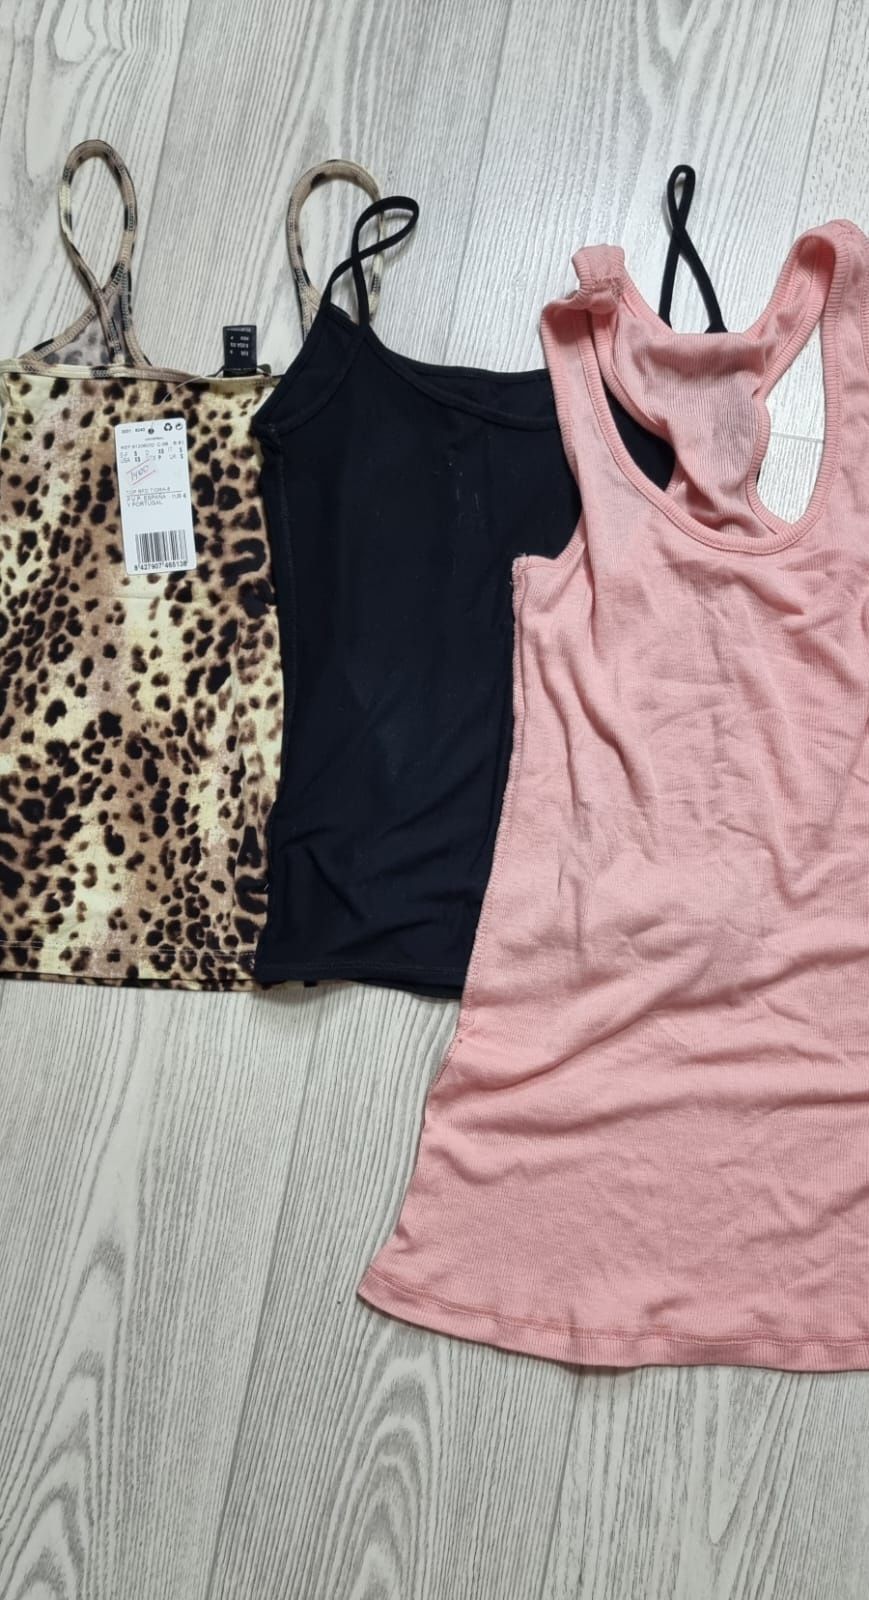 Кофты и футболки женские размер XS-S-M